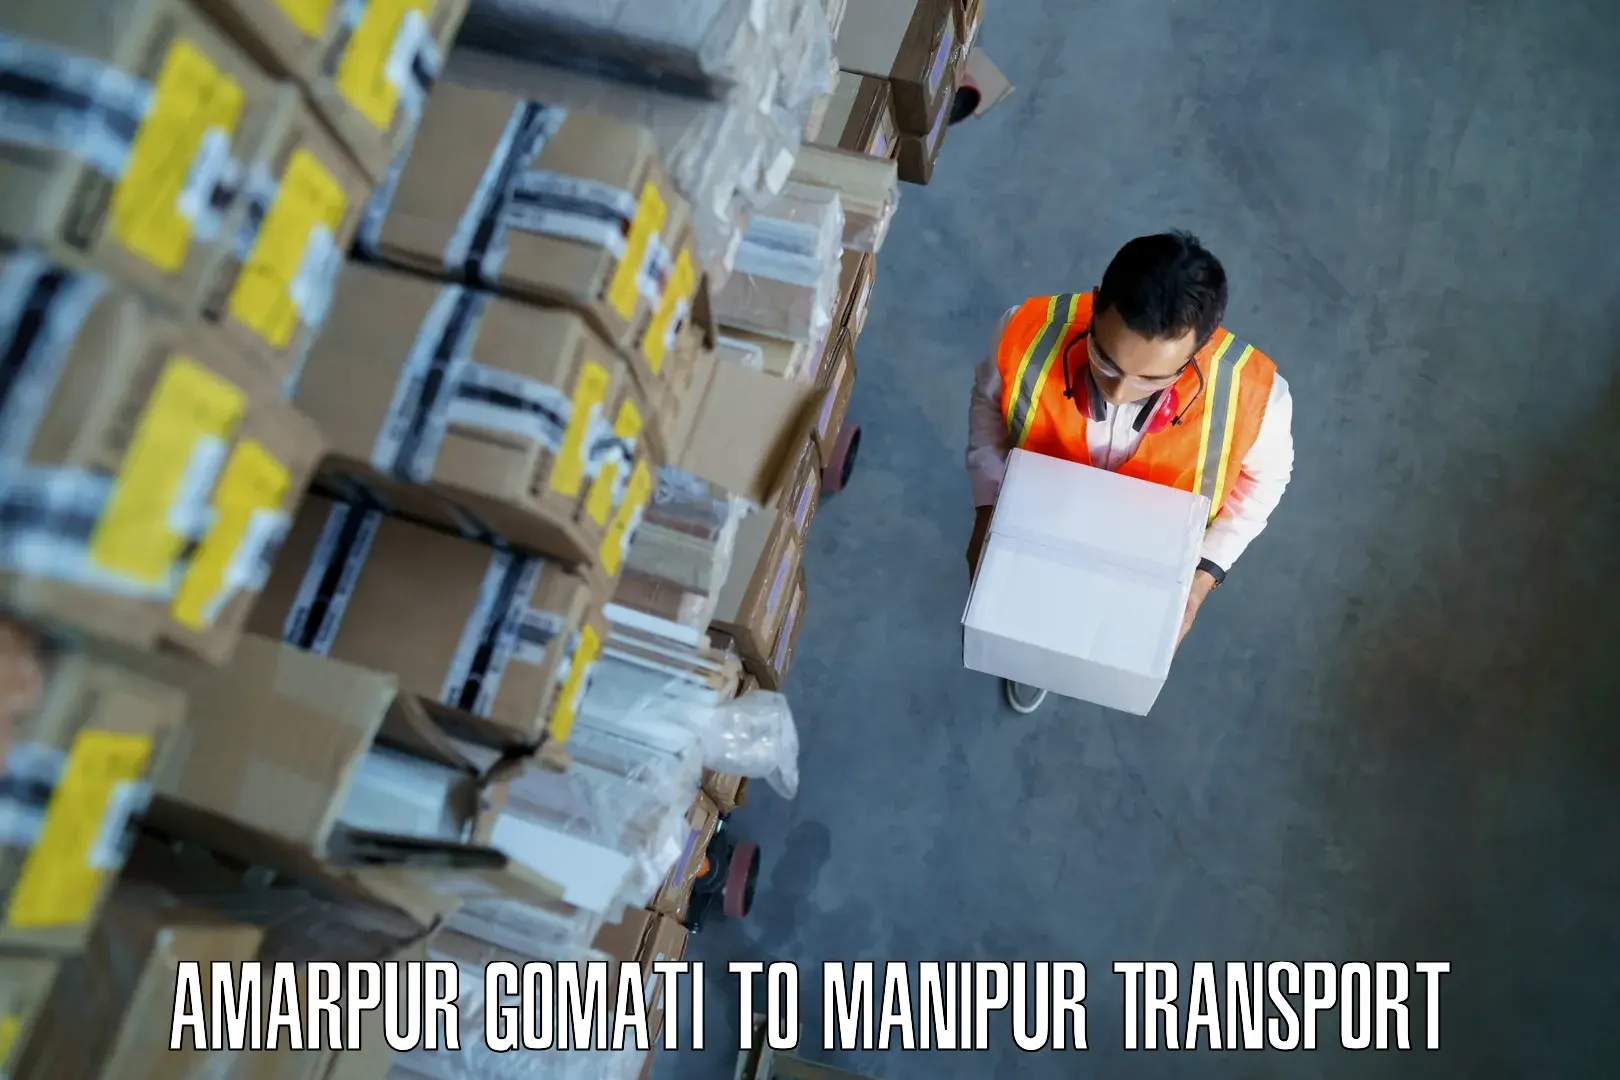 Air cargo transport services Amarpur Gomati to Manipur